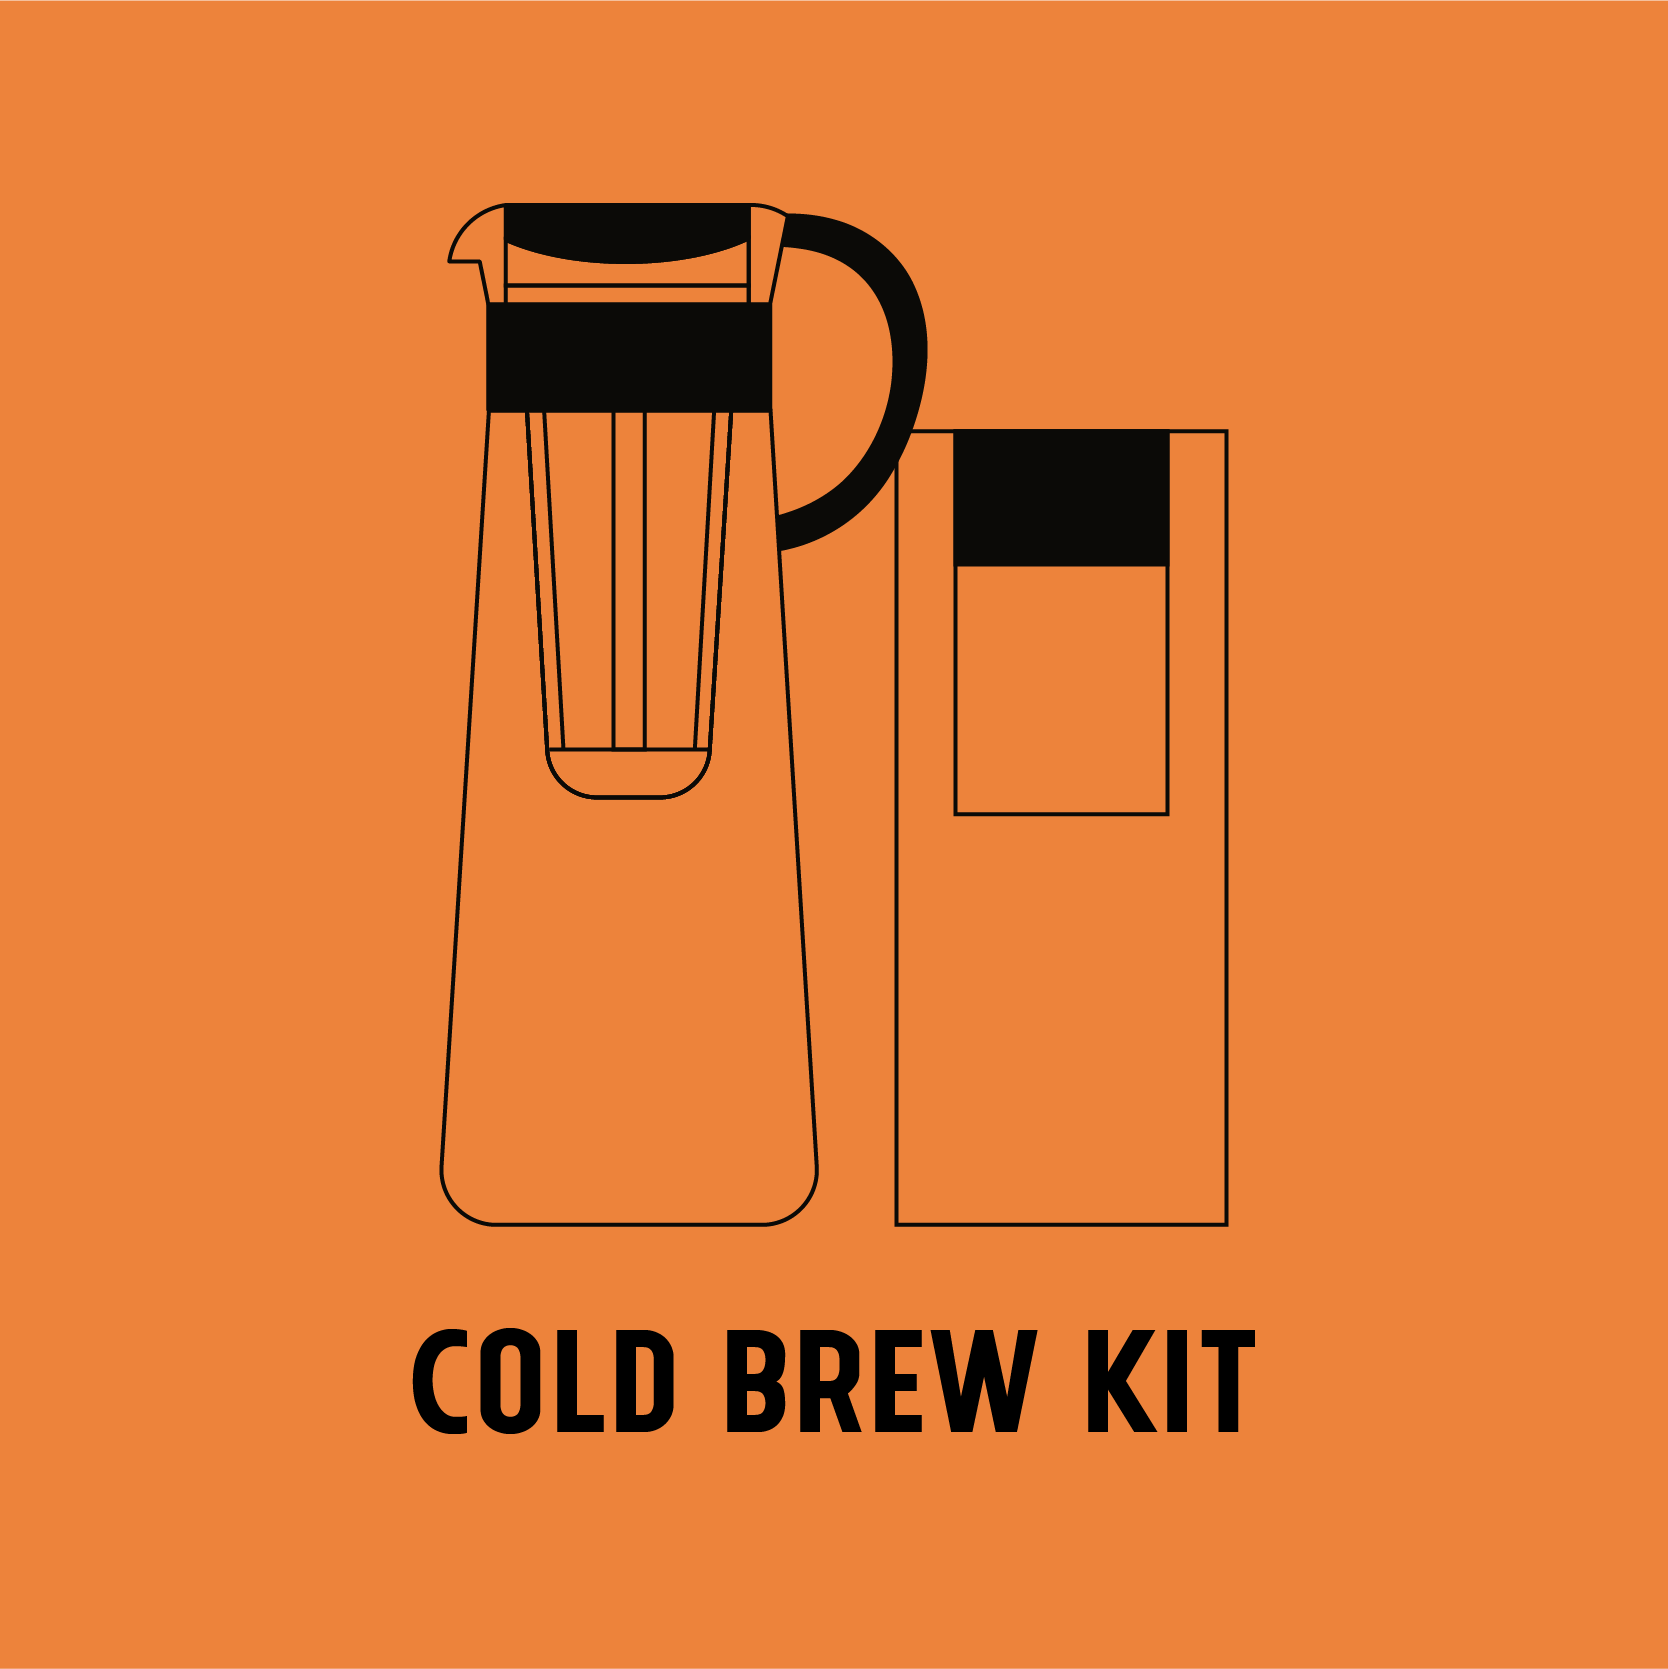 Cold brew kit